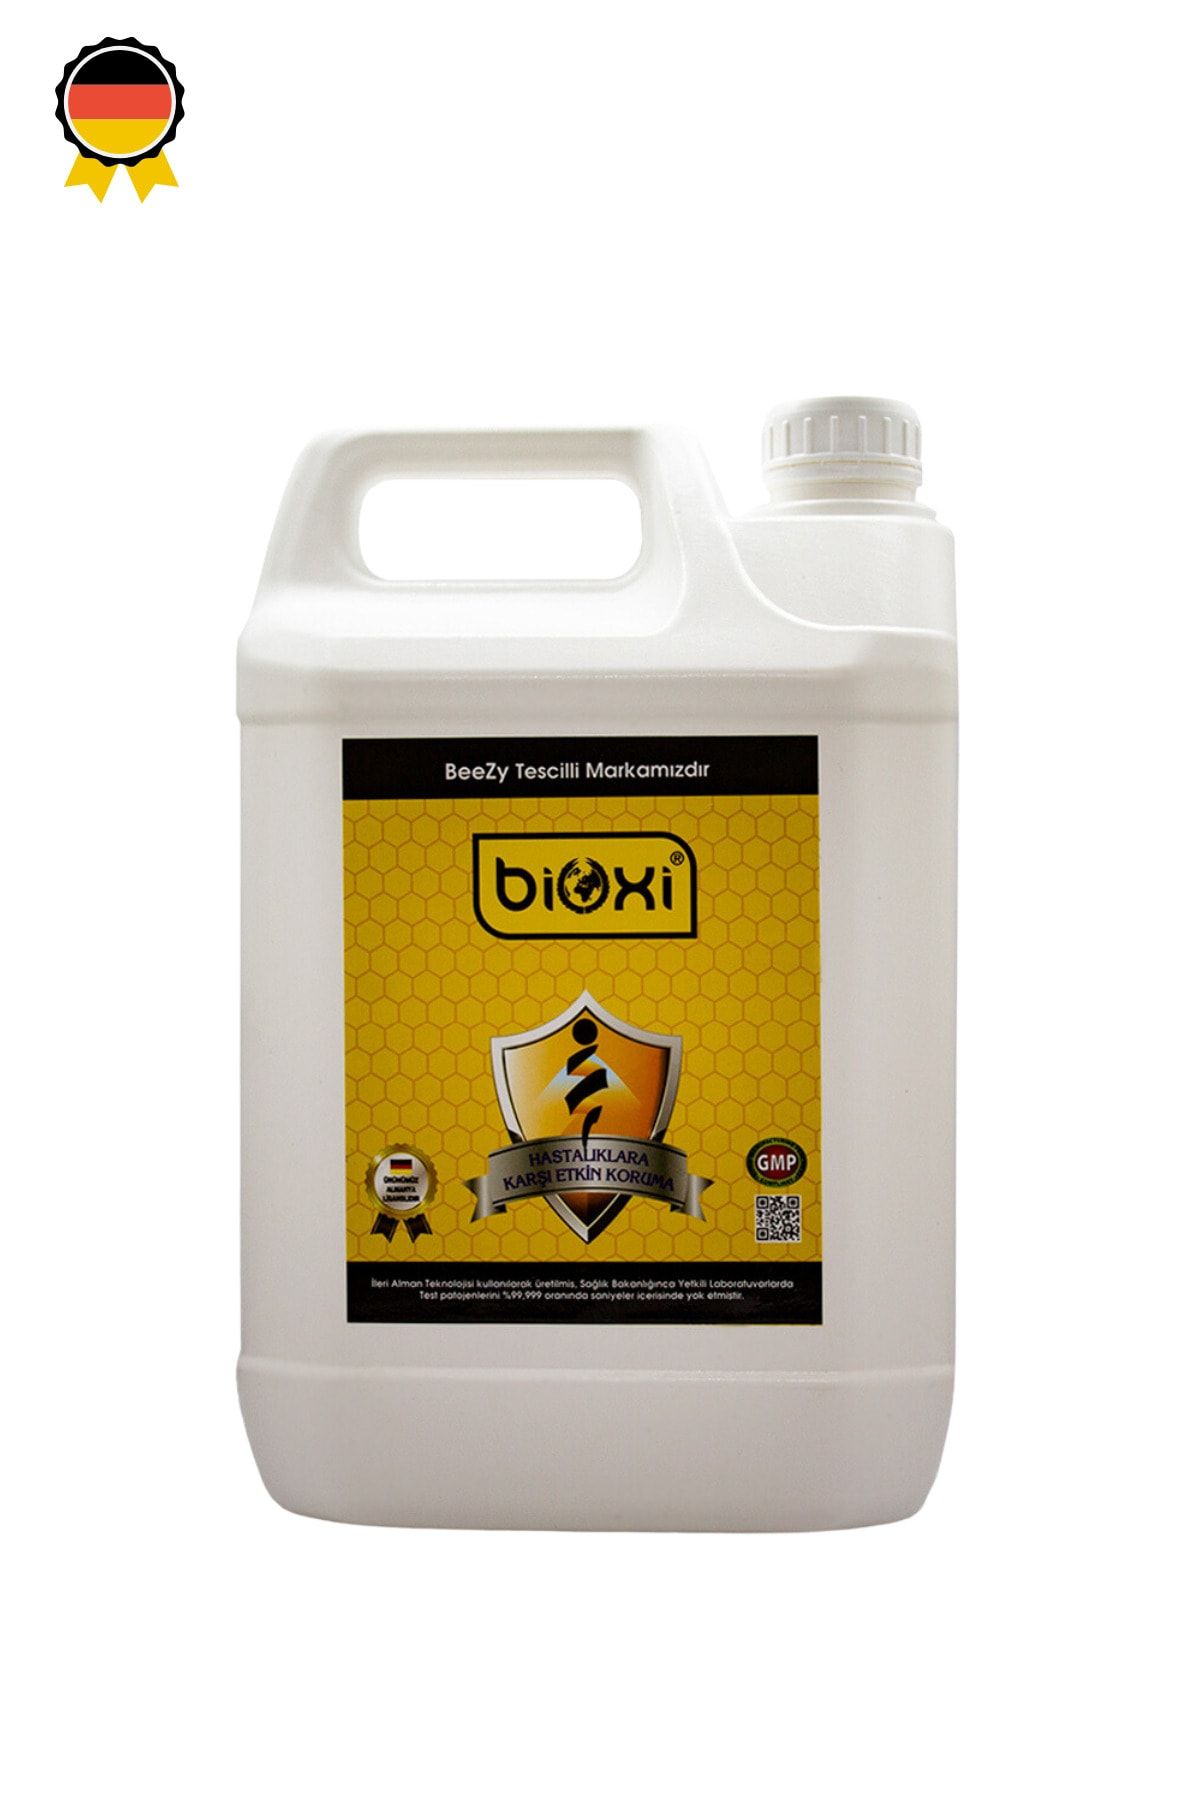 Bioxi ® Beezy Arıcılık Bakım Kovan Dezenfektanı 5lt /hipokloröz Asit Bazlı - Arı Hastalıklarına Son!